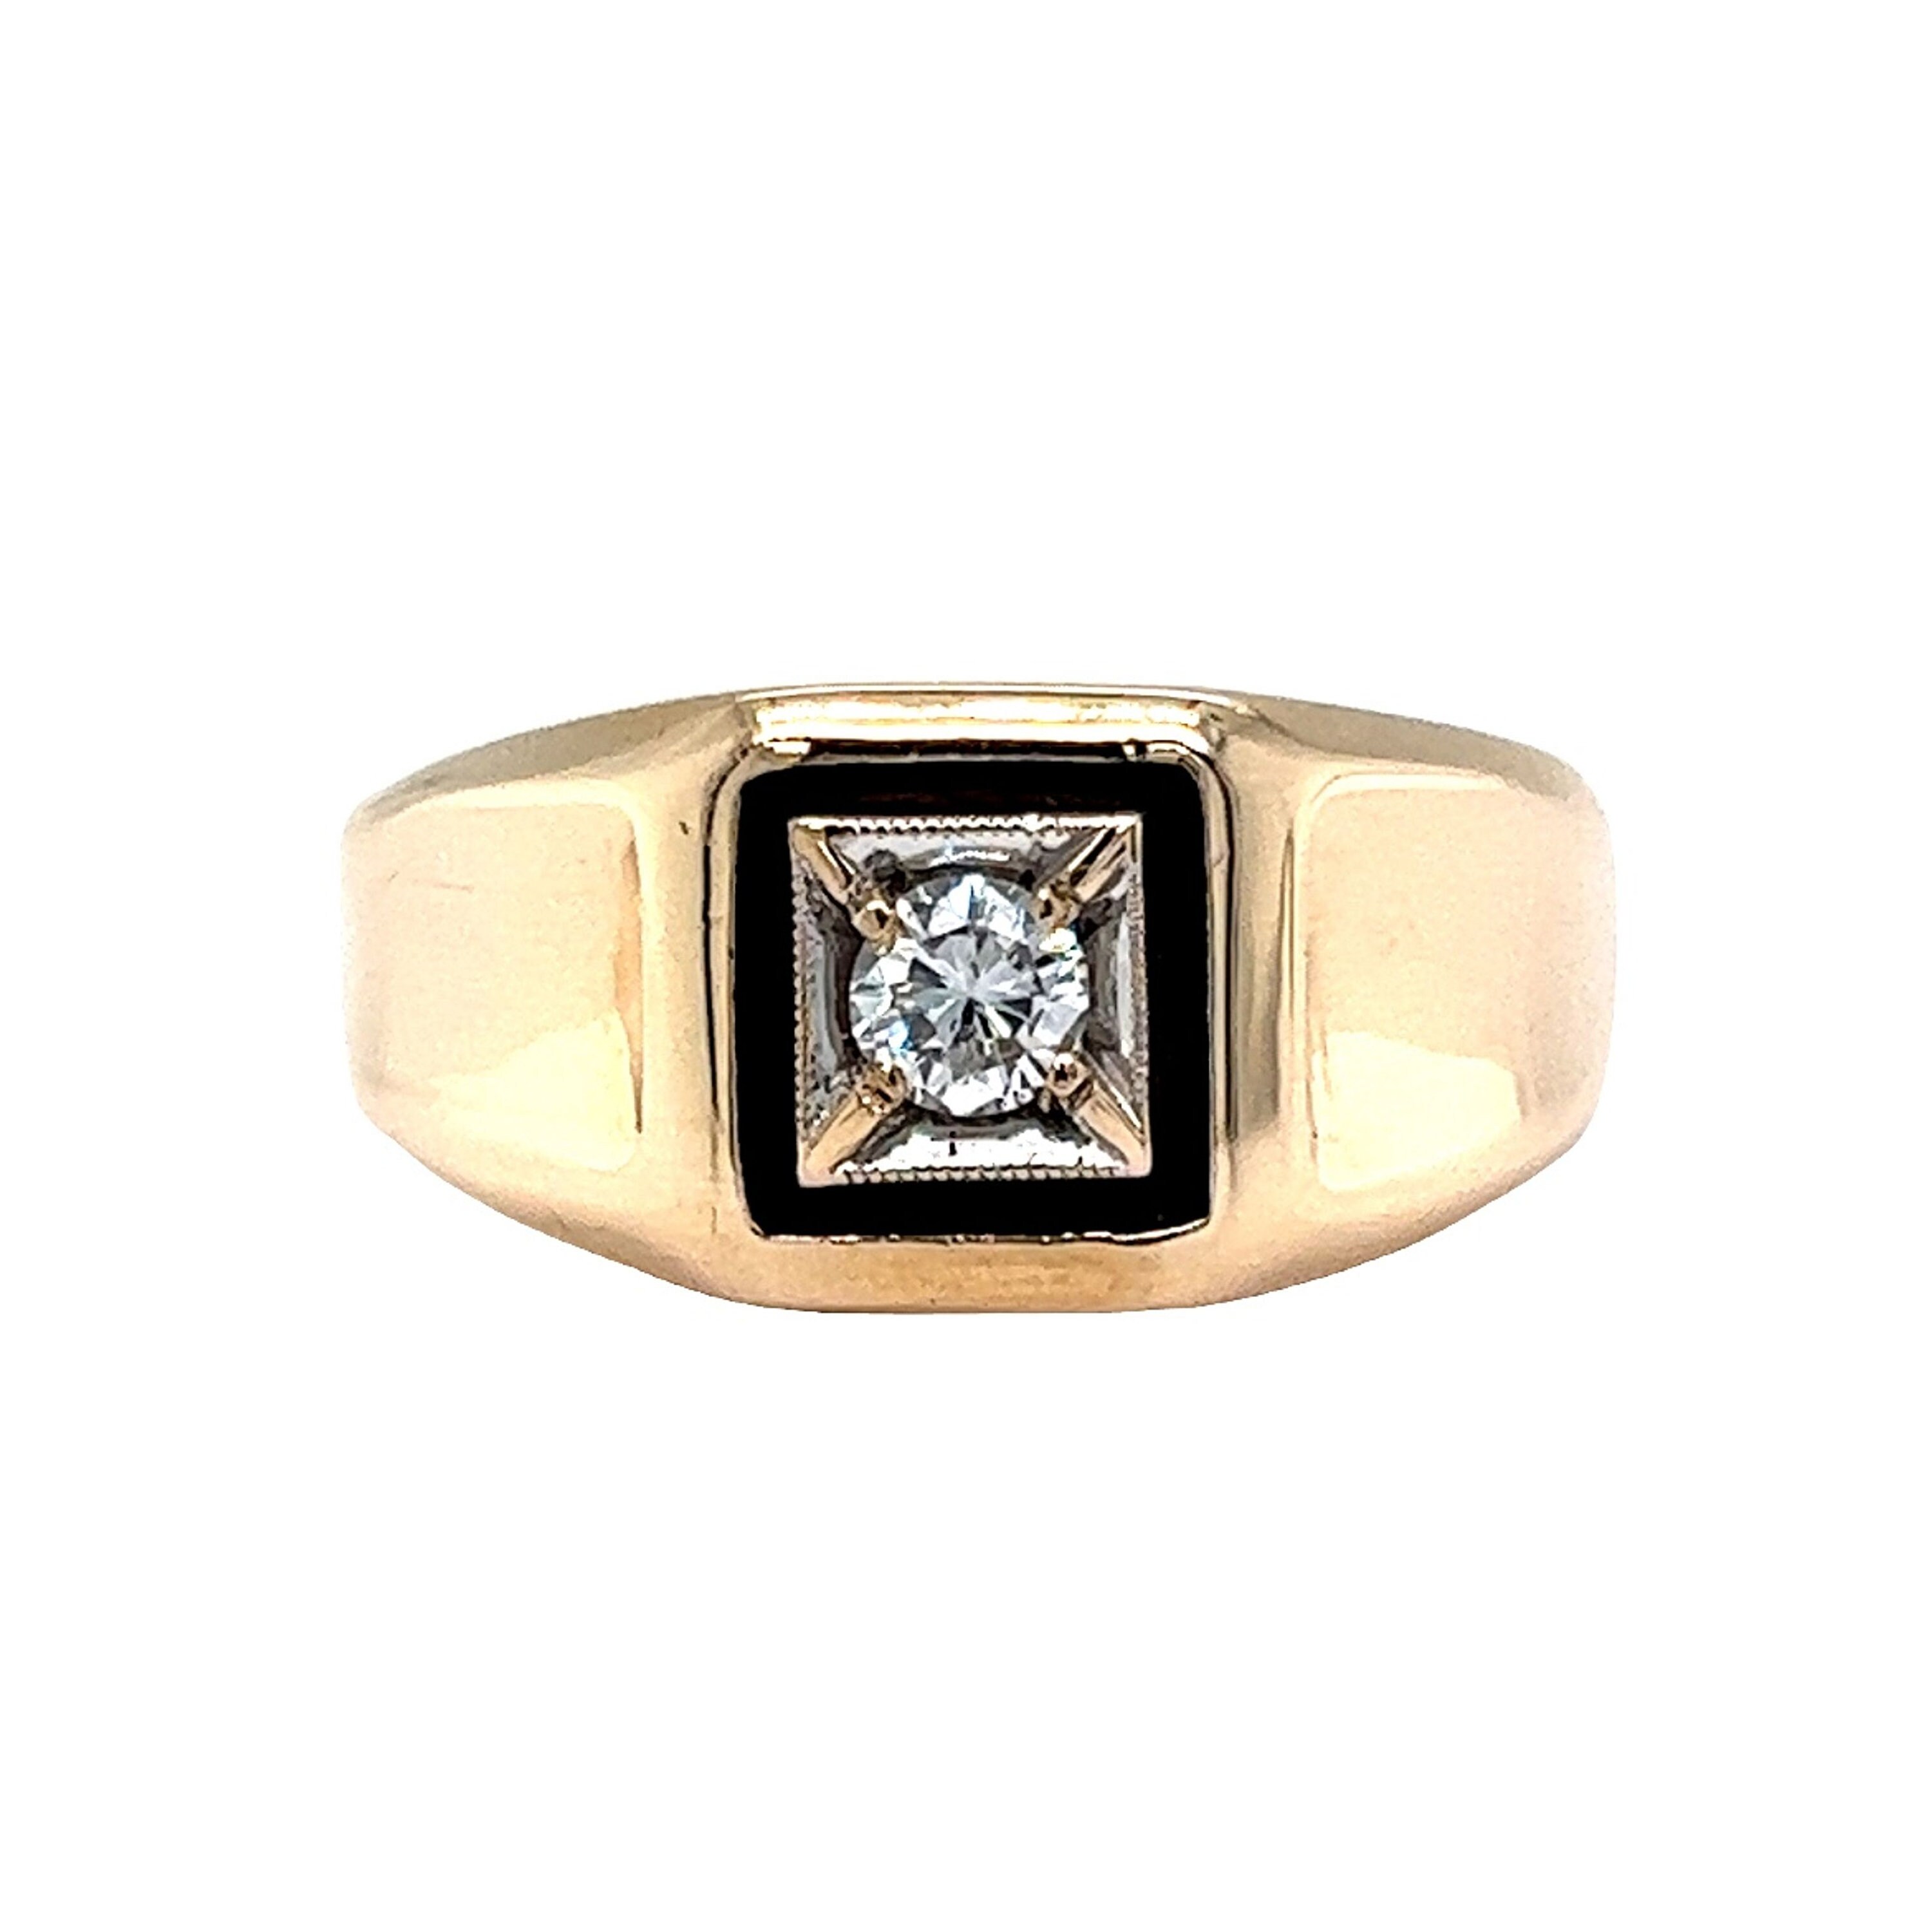 Buy Grand 18Kt Diamond Ring for Men Online | ORRA